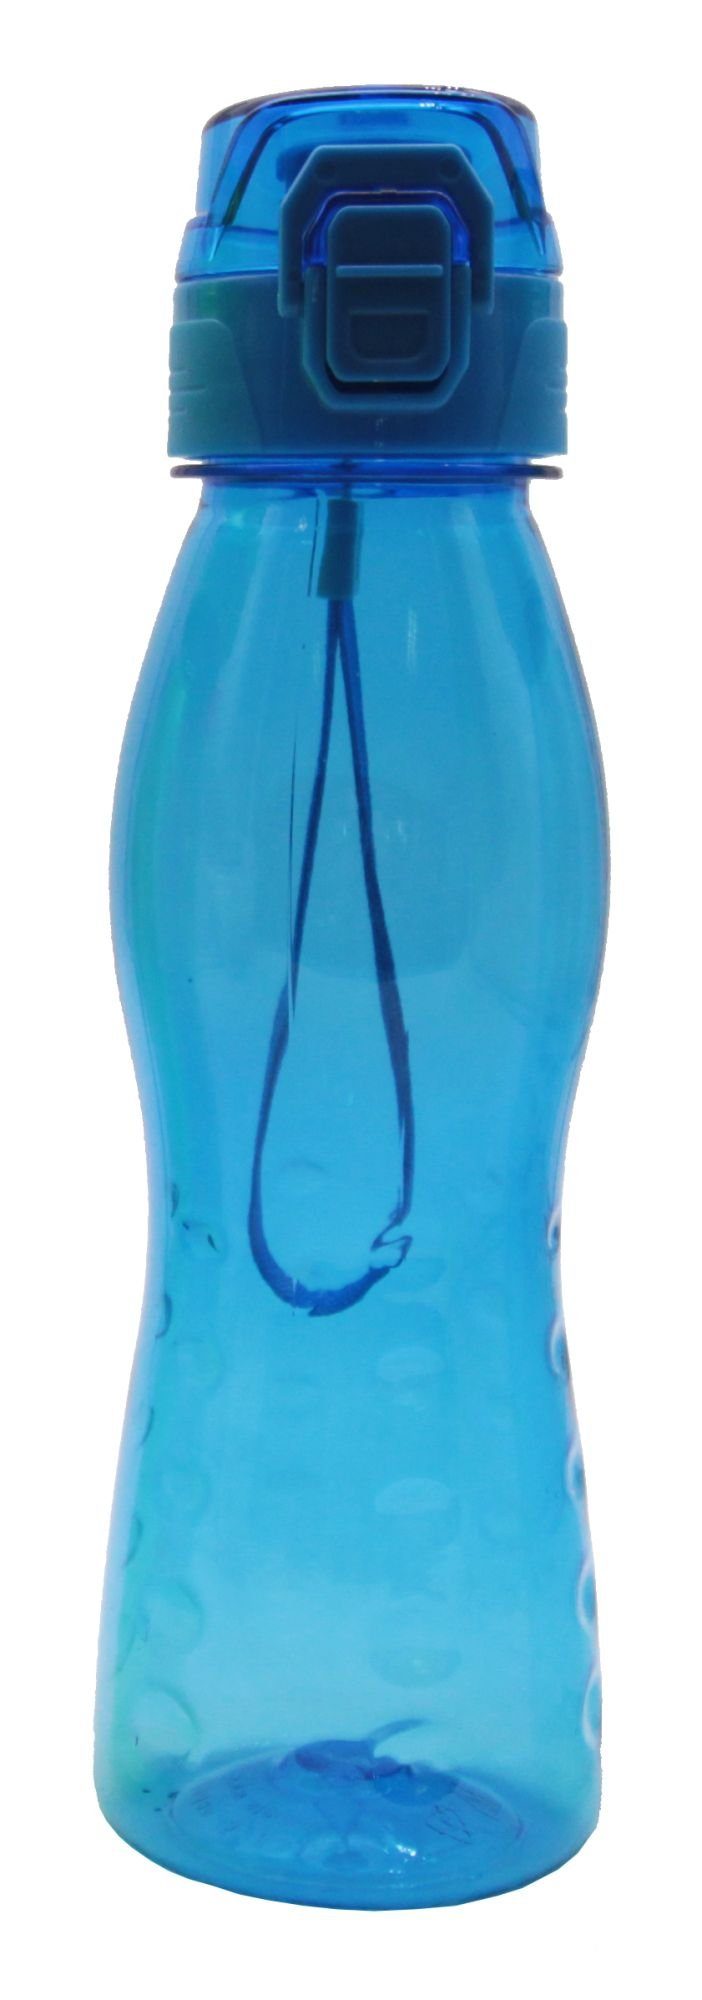 Steuber Trinkflasche, Klick Top Premium Freizeit Trinkflasche, 700 ml, 10 Stück